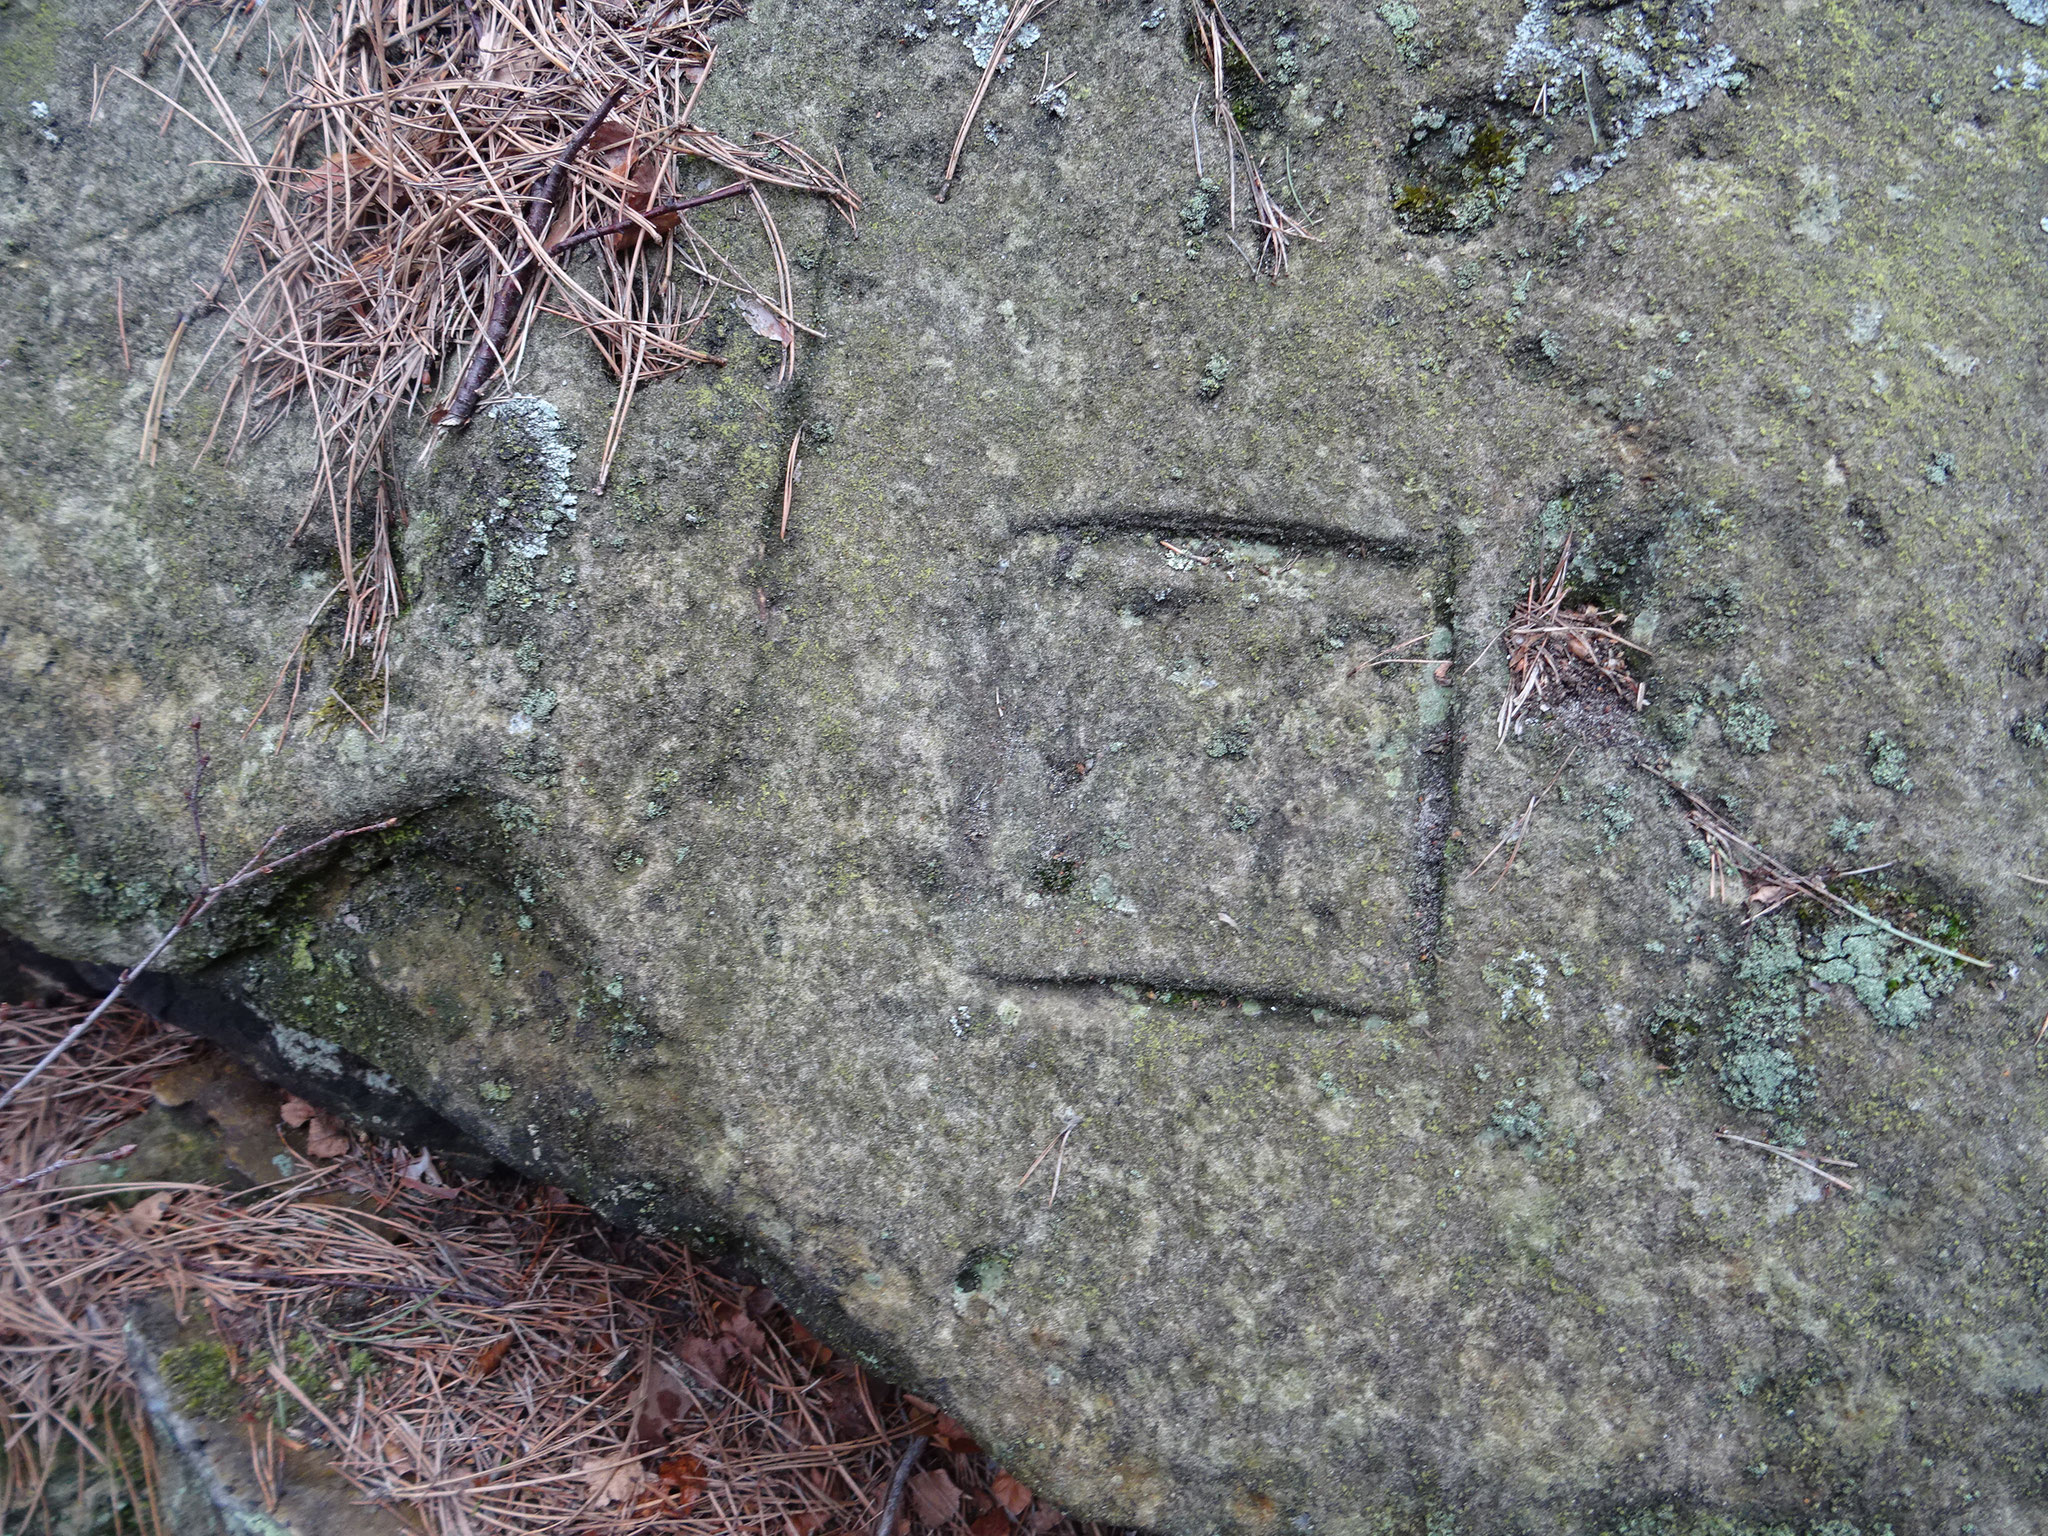 Am Felsen sind mehrere Quadrate, alte, heilige Symbole zu finden